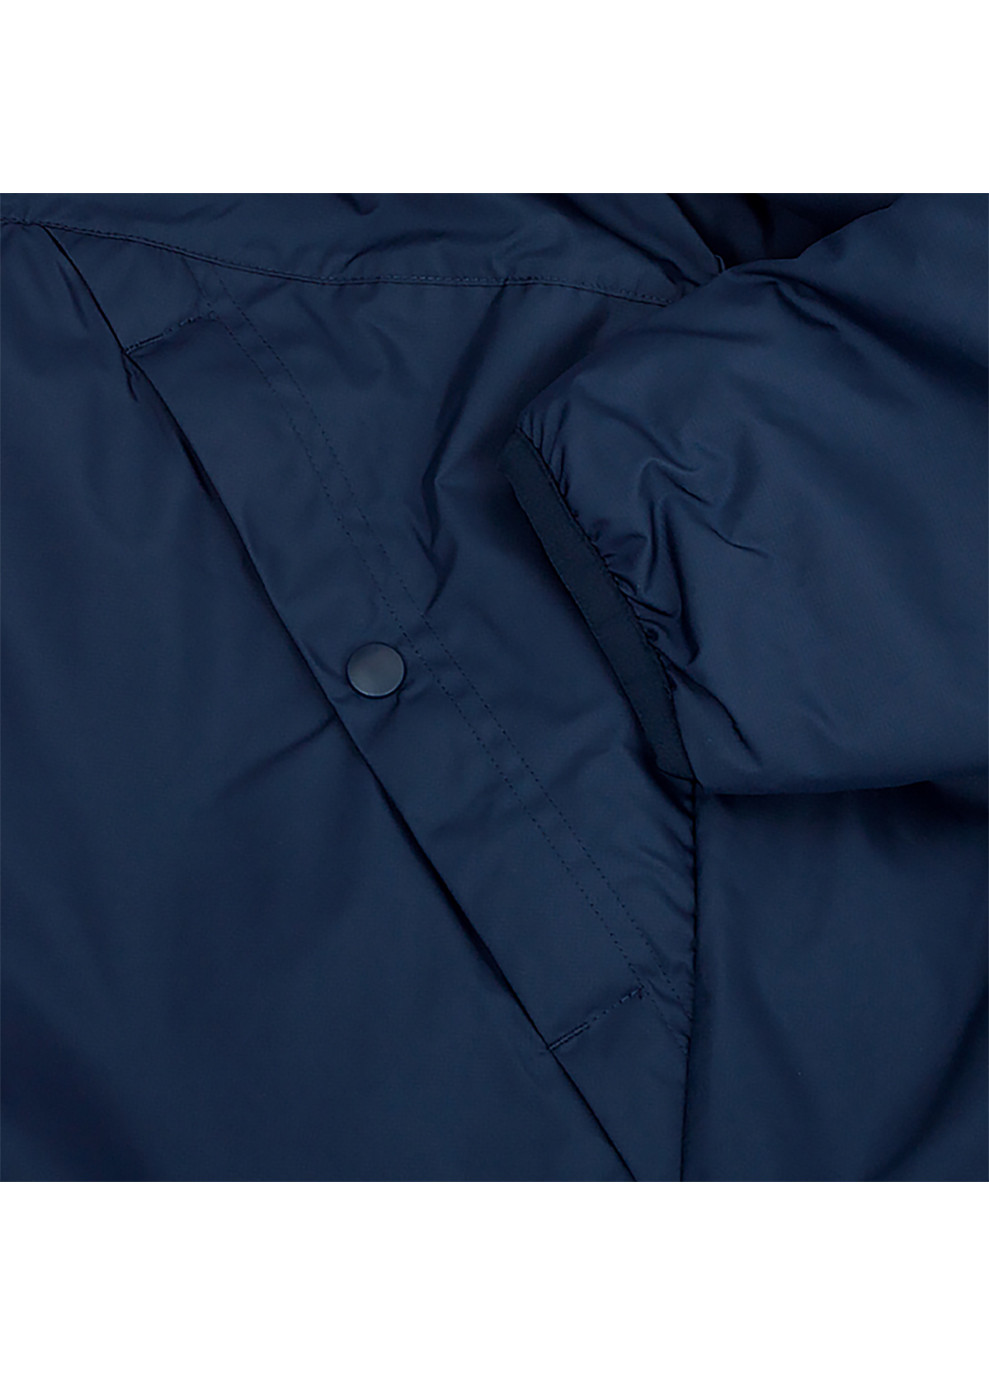 Синяя демисезонная мужская куртка m nk syn fl rpl park20 sdf jkt синий Nike